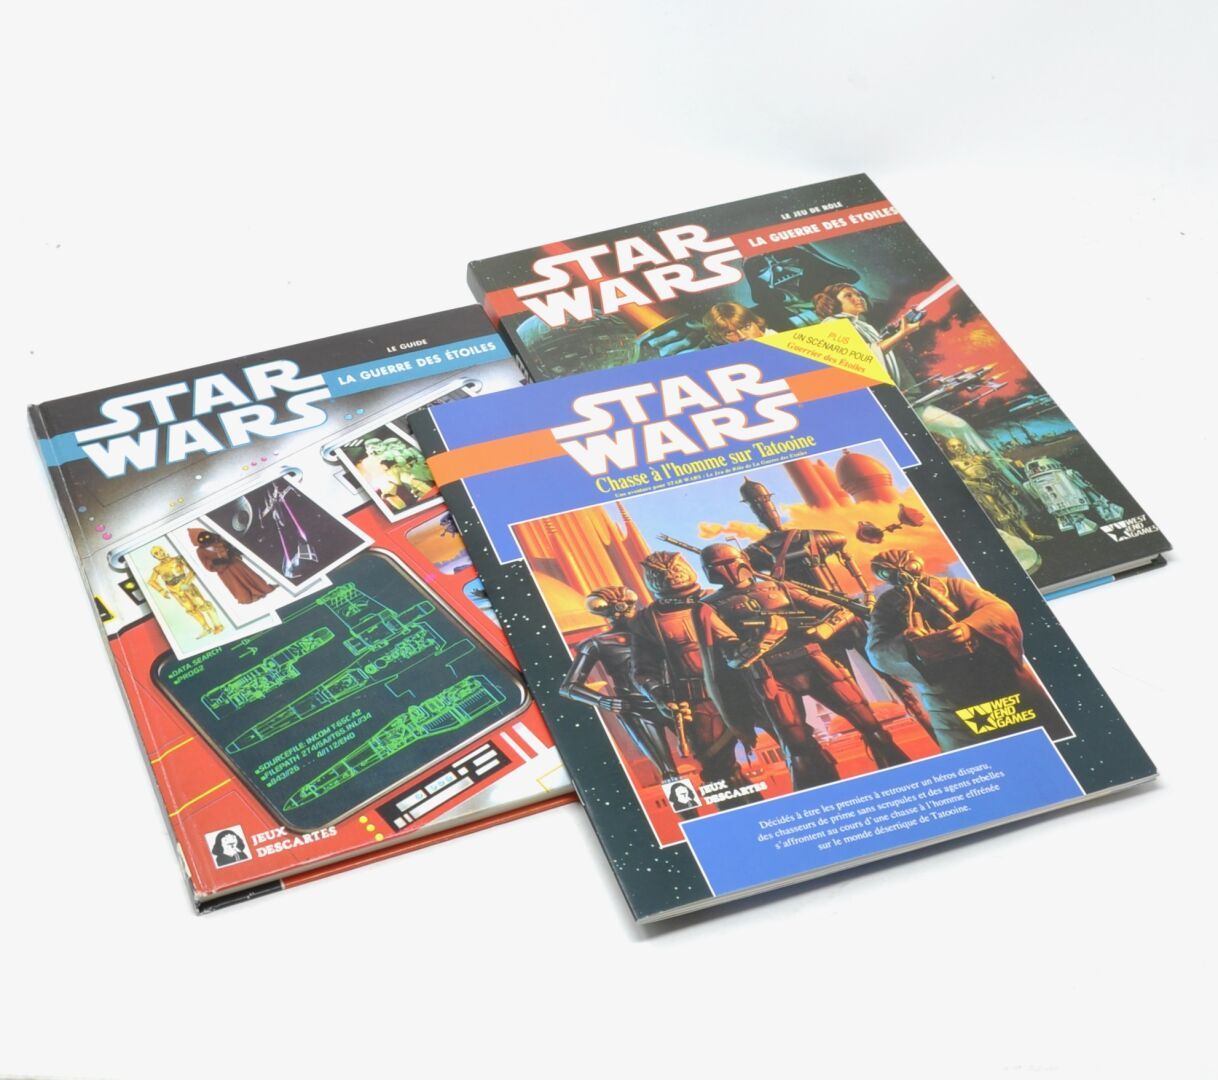 Null STAR WARS

Libros y reseñas de juegos de rol sobre el universo de Star Wars&hellip;